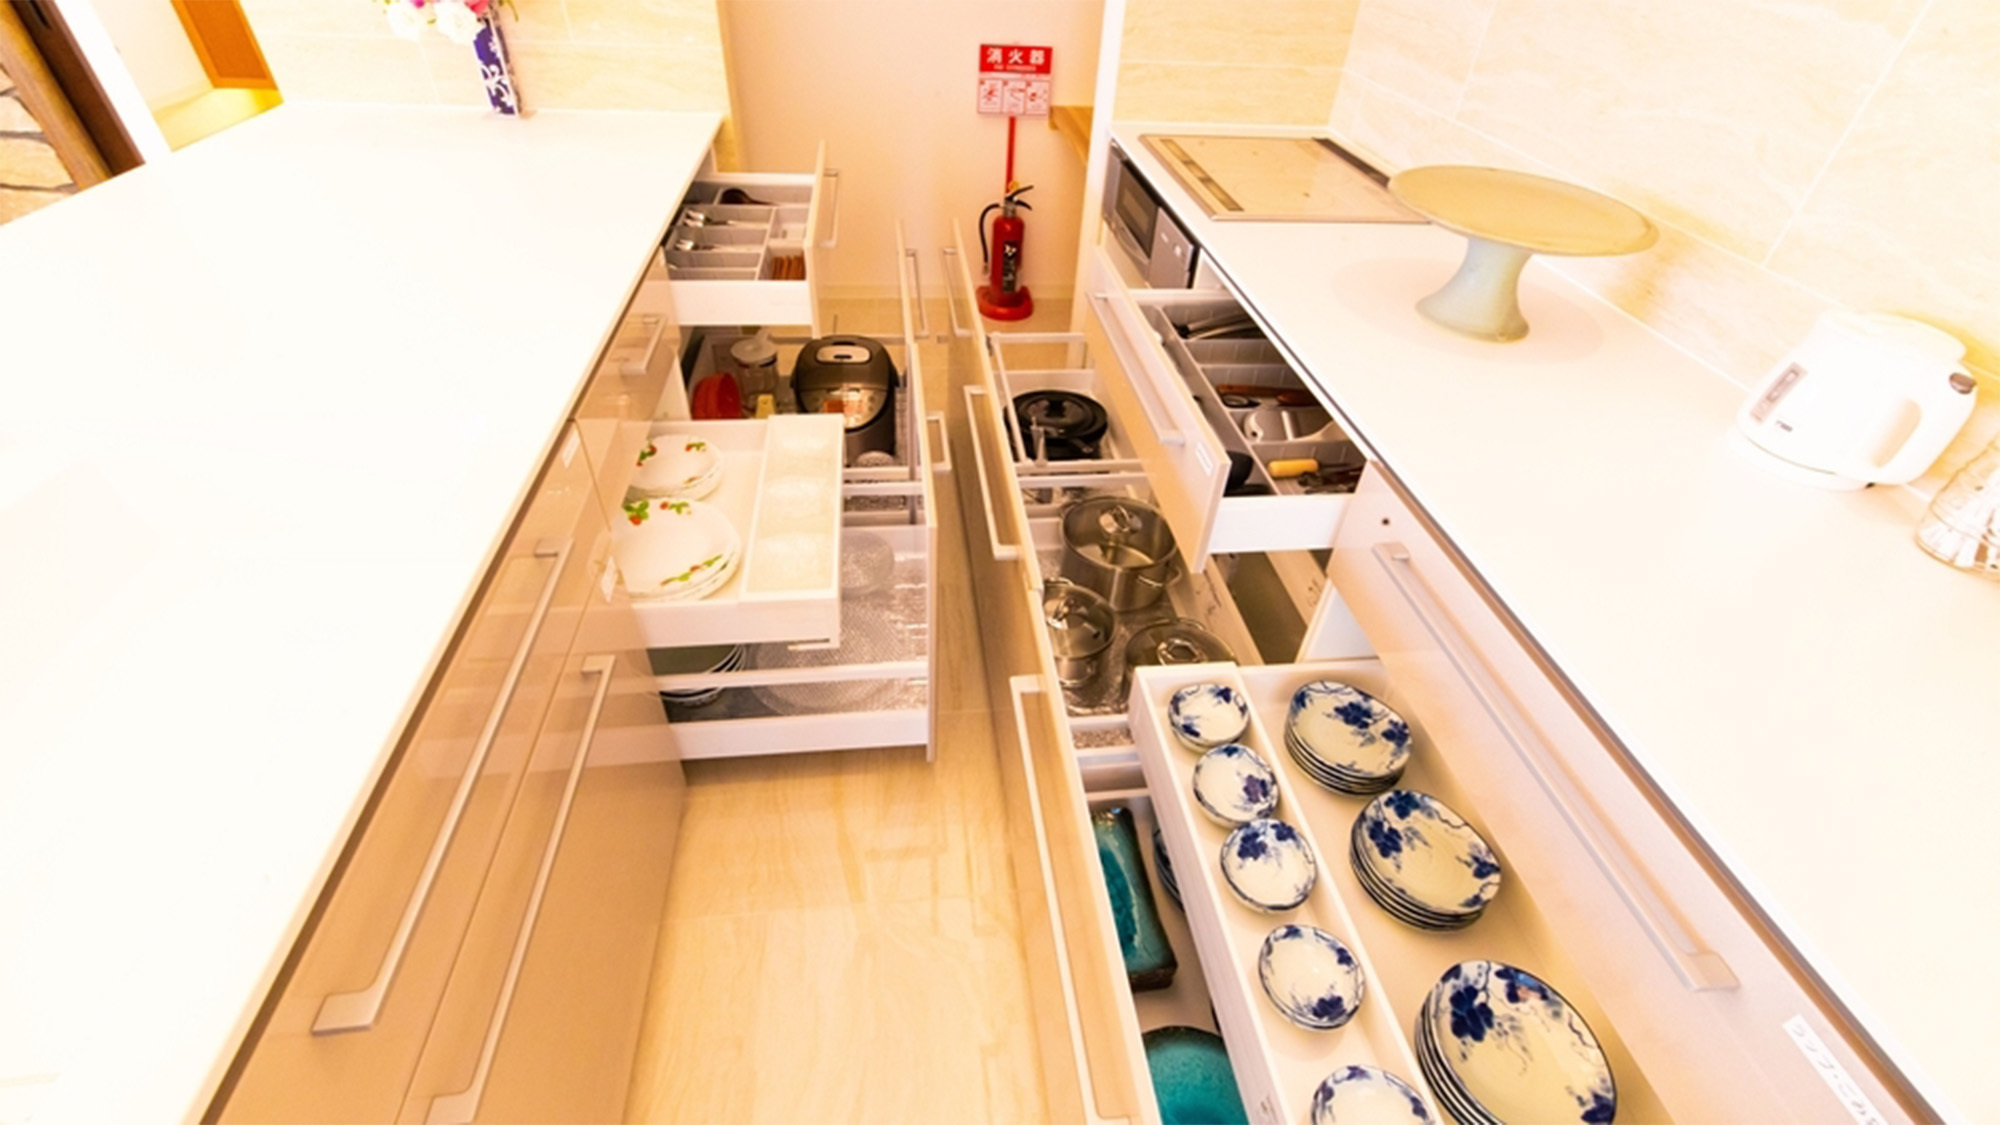 ・【Sun Suite】自炊対応可能です、調理器具や食器類も完備しています